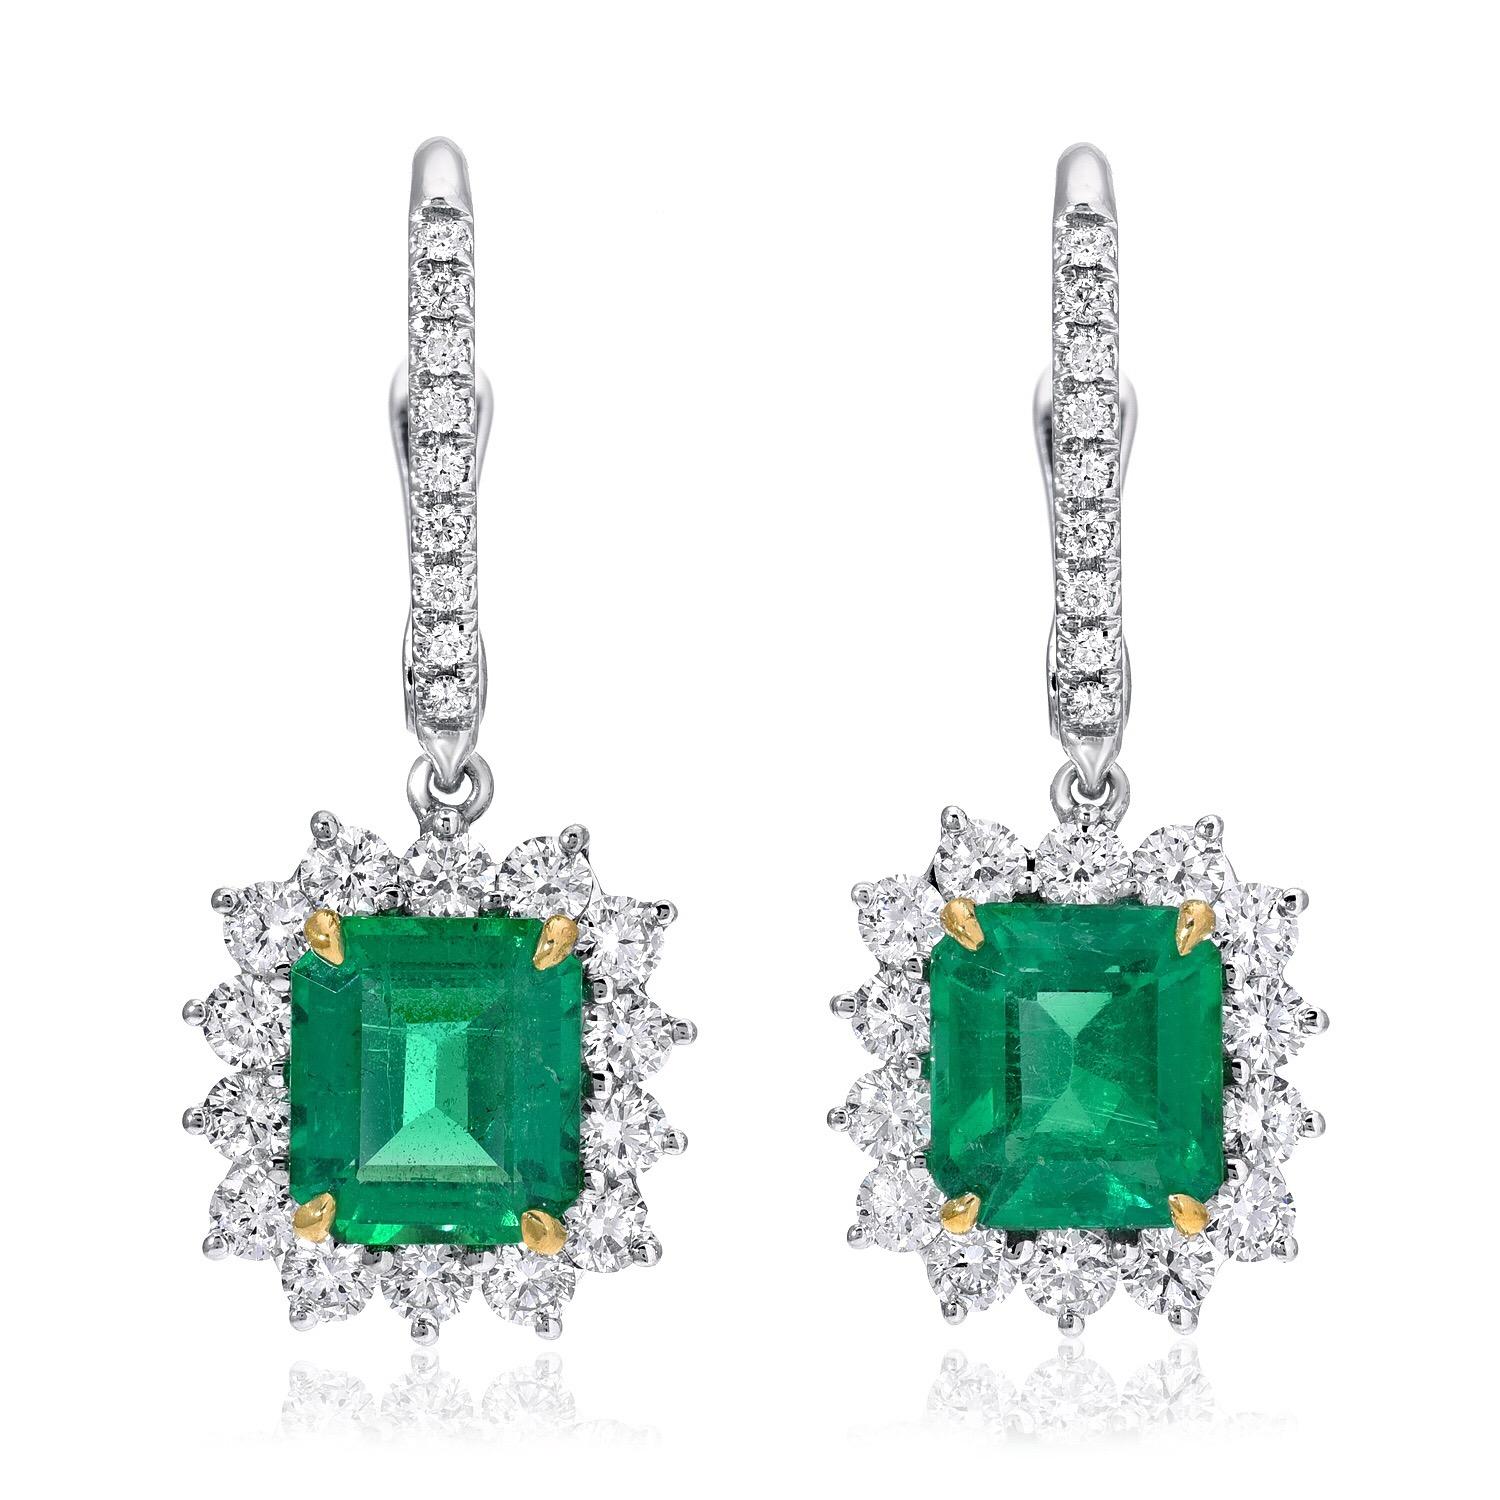 Contemporary Emerald Earrings Emerald Cut 2.68 Carats 